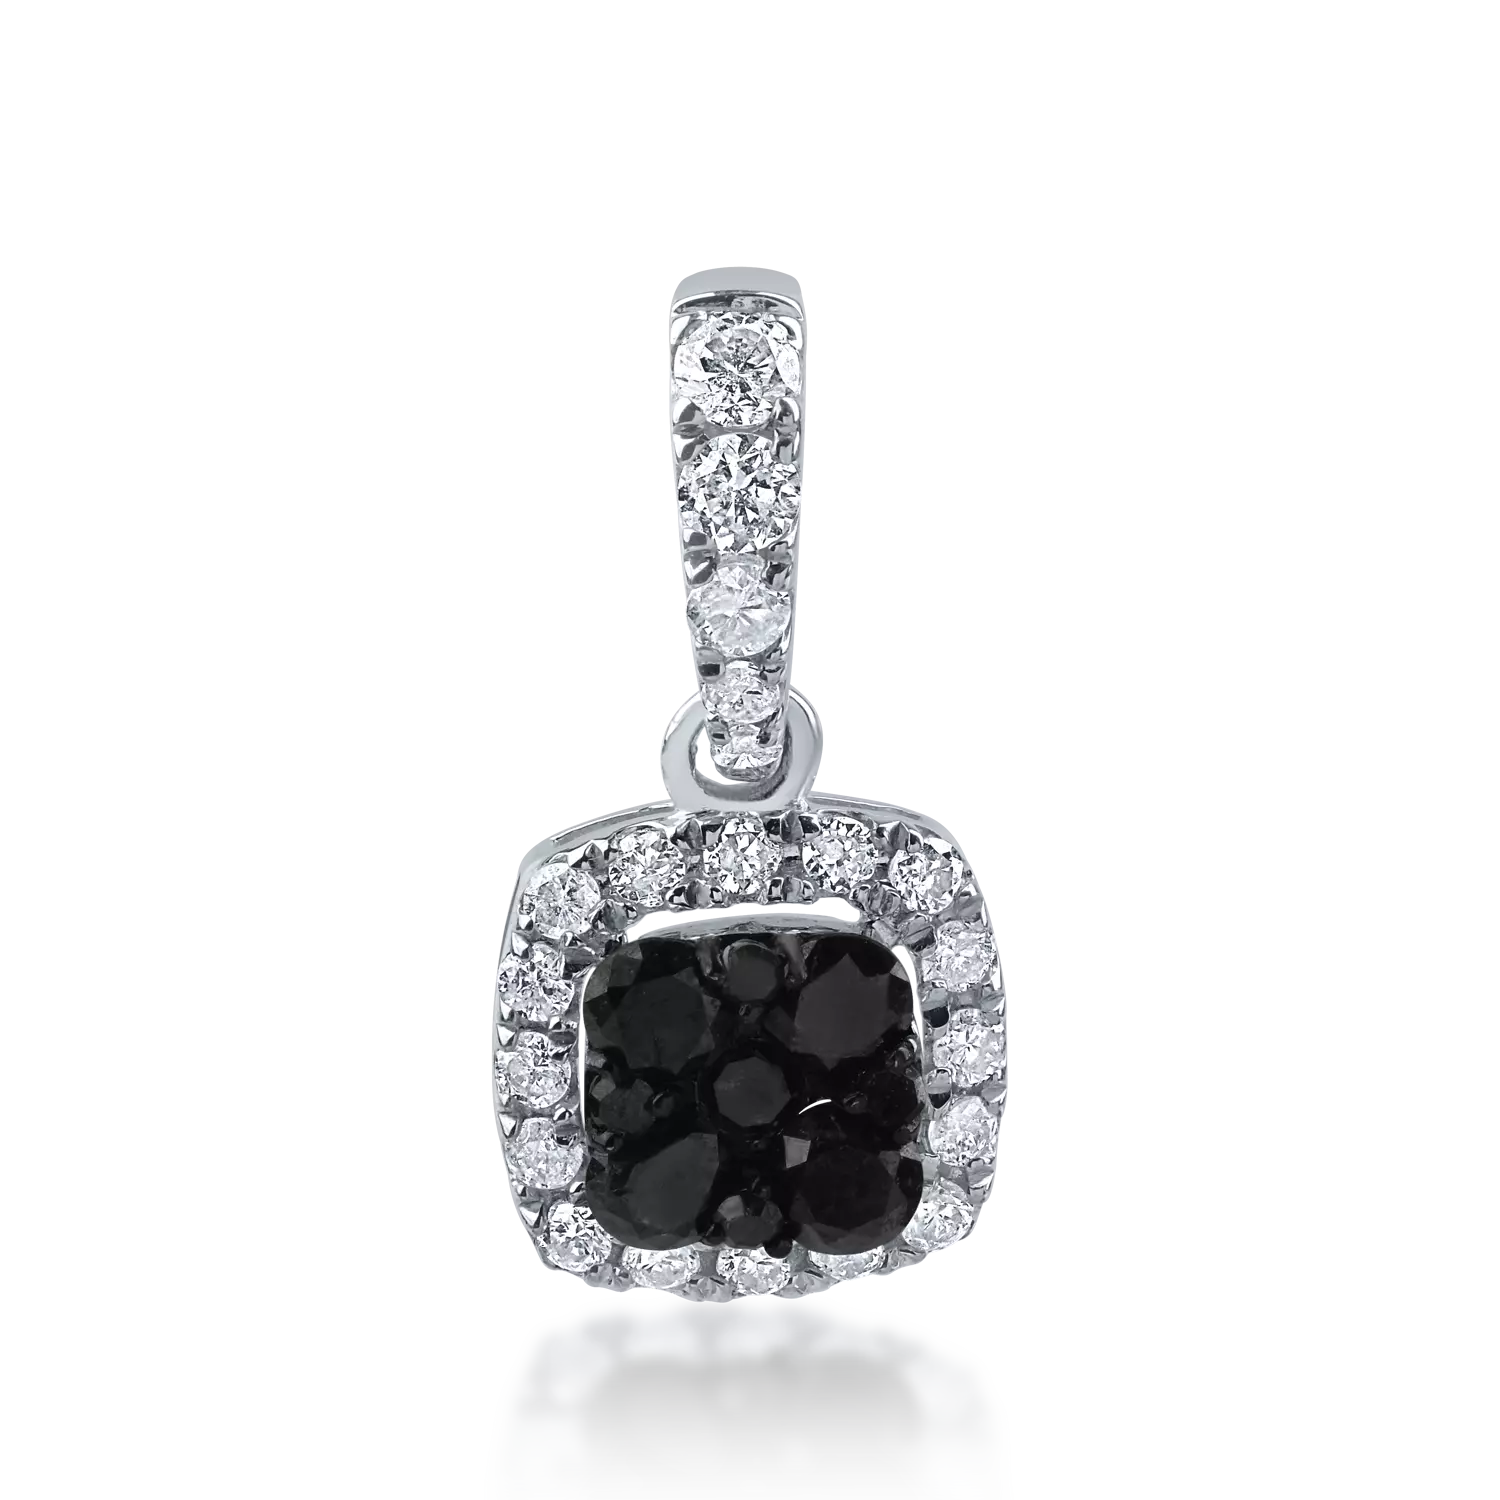 Minimalista fehérarany medál 0.158ct fekete gyémántokkal és 0.072ct tiszta gyémántokkal